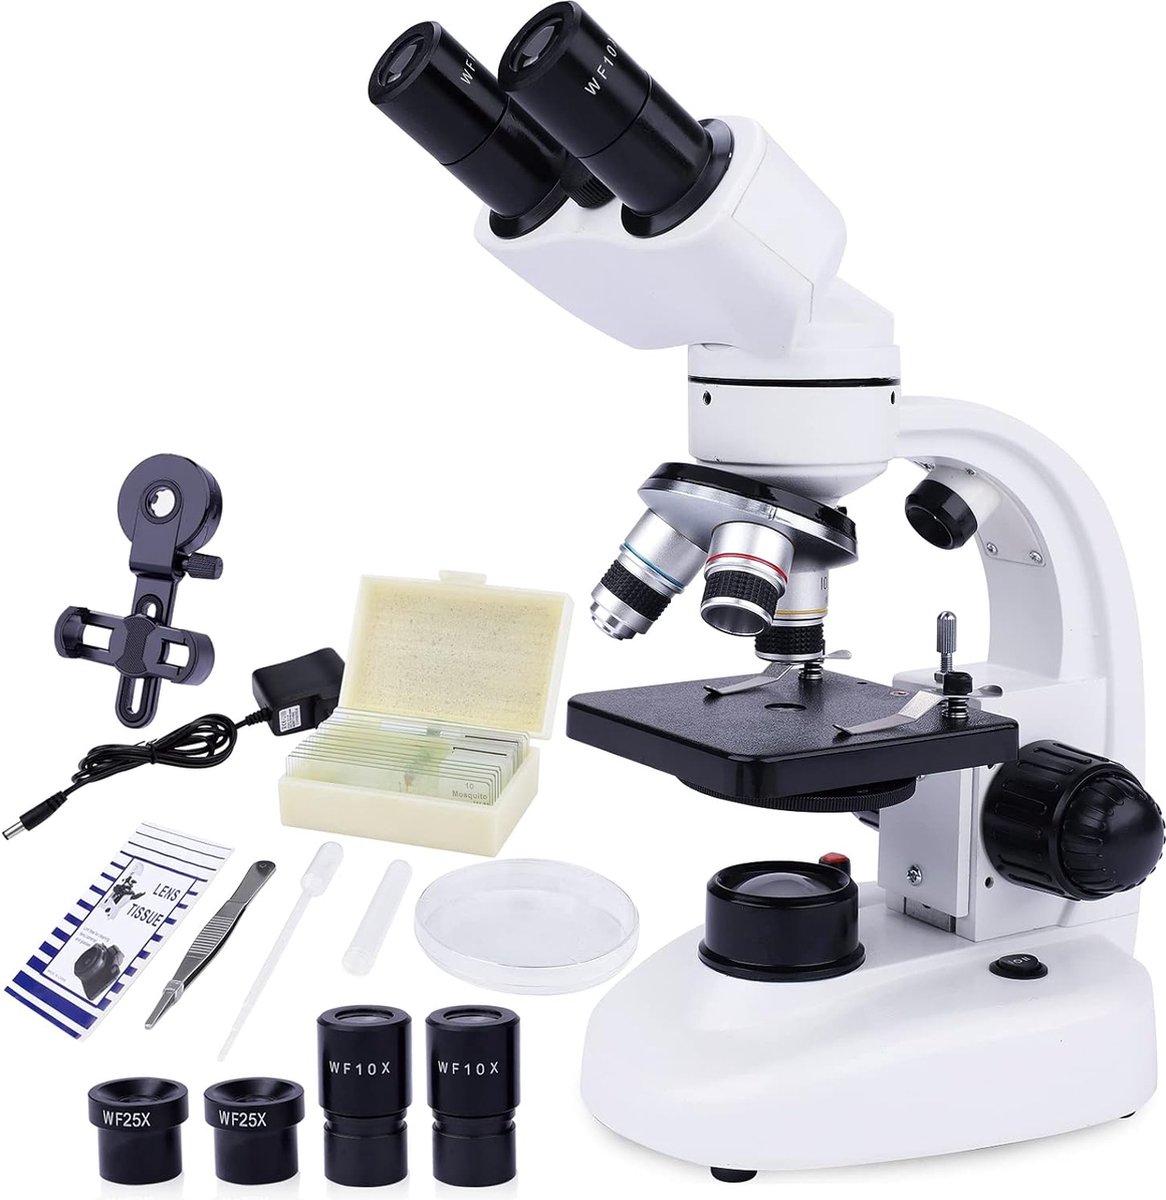 Microscoop en Verrekijker Set voor Kinderen en Volwassenen - Ontdekking en Observatie - Binoculaire Oculairs - Draagbaar en Duurzaam - Accessoires Inbegrepen - Stem Educatief Speelgoed